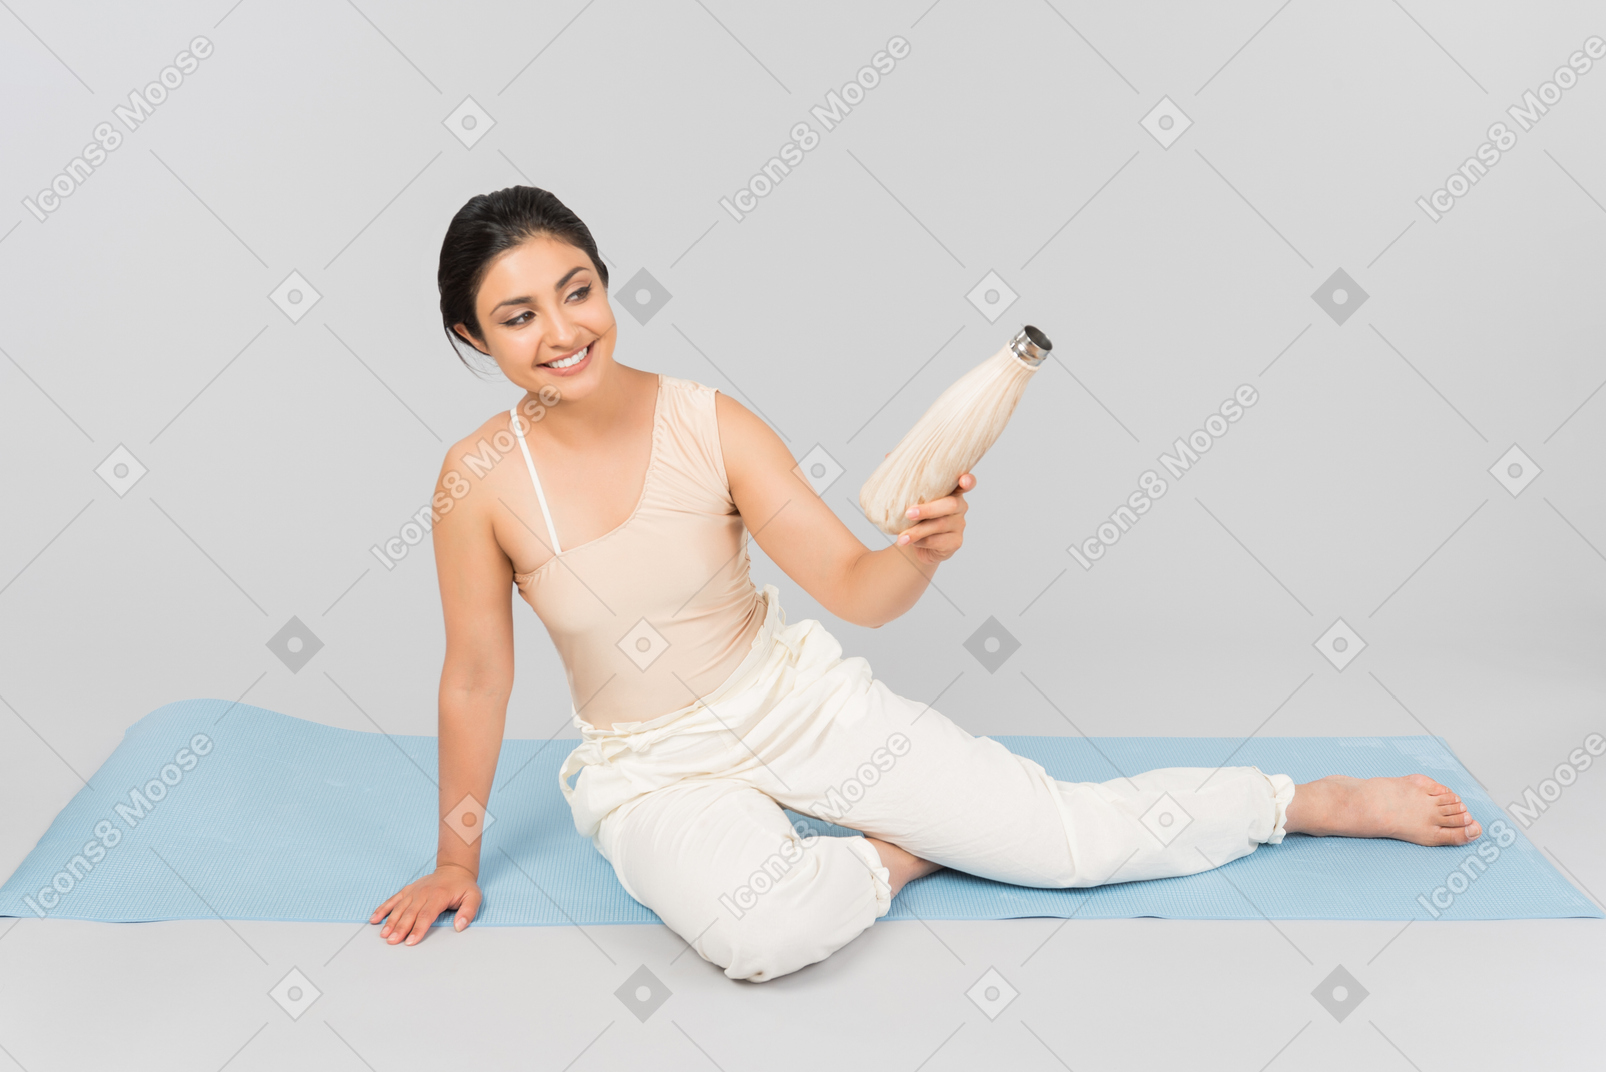 Jeune femme indienne assise sur un tapis de yoga et tenant une bouteille de sport